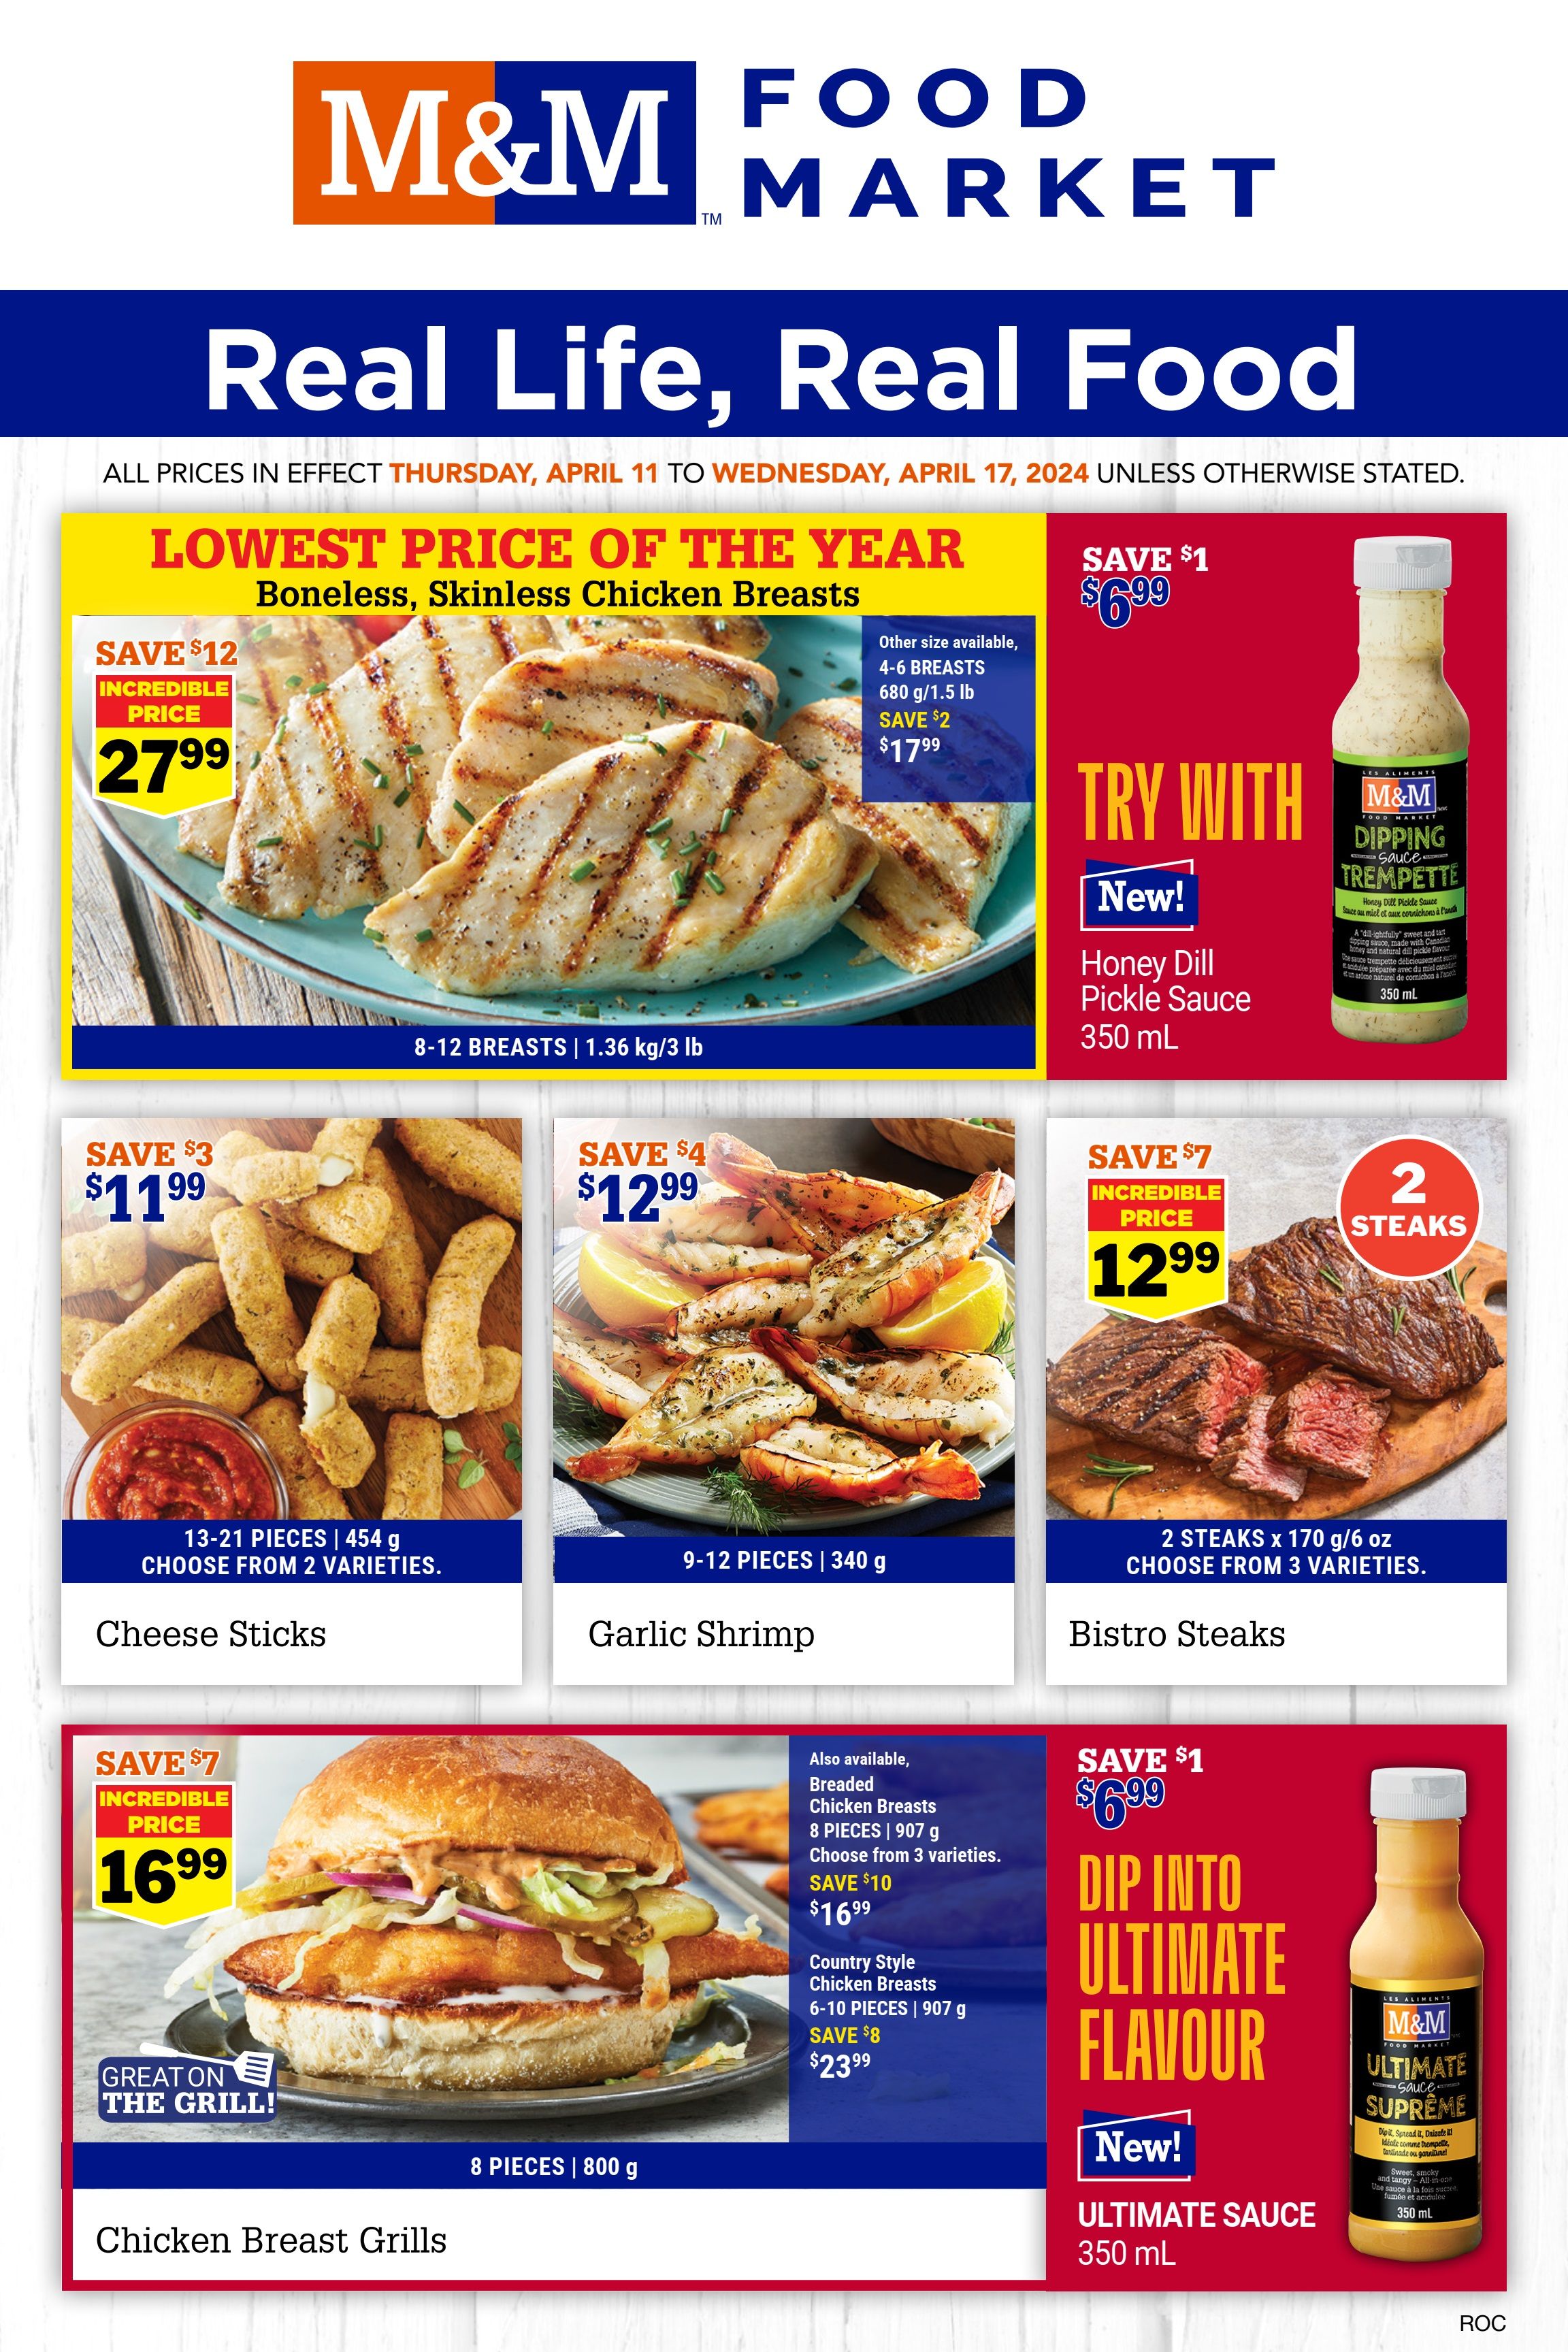 M&M Food Market - Atlantic Canada - Weekly Flyer Specials